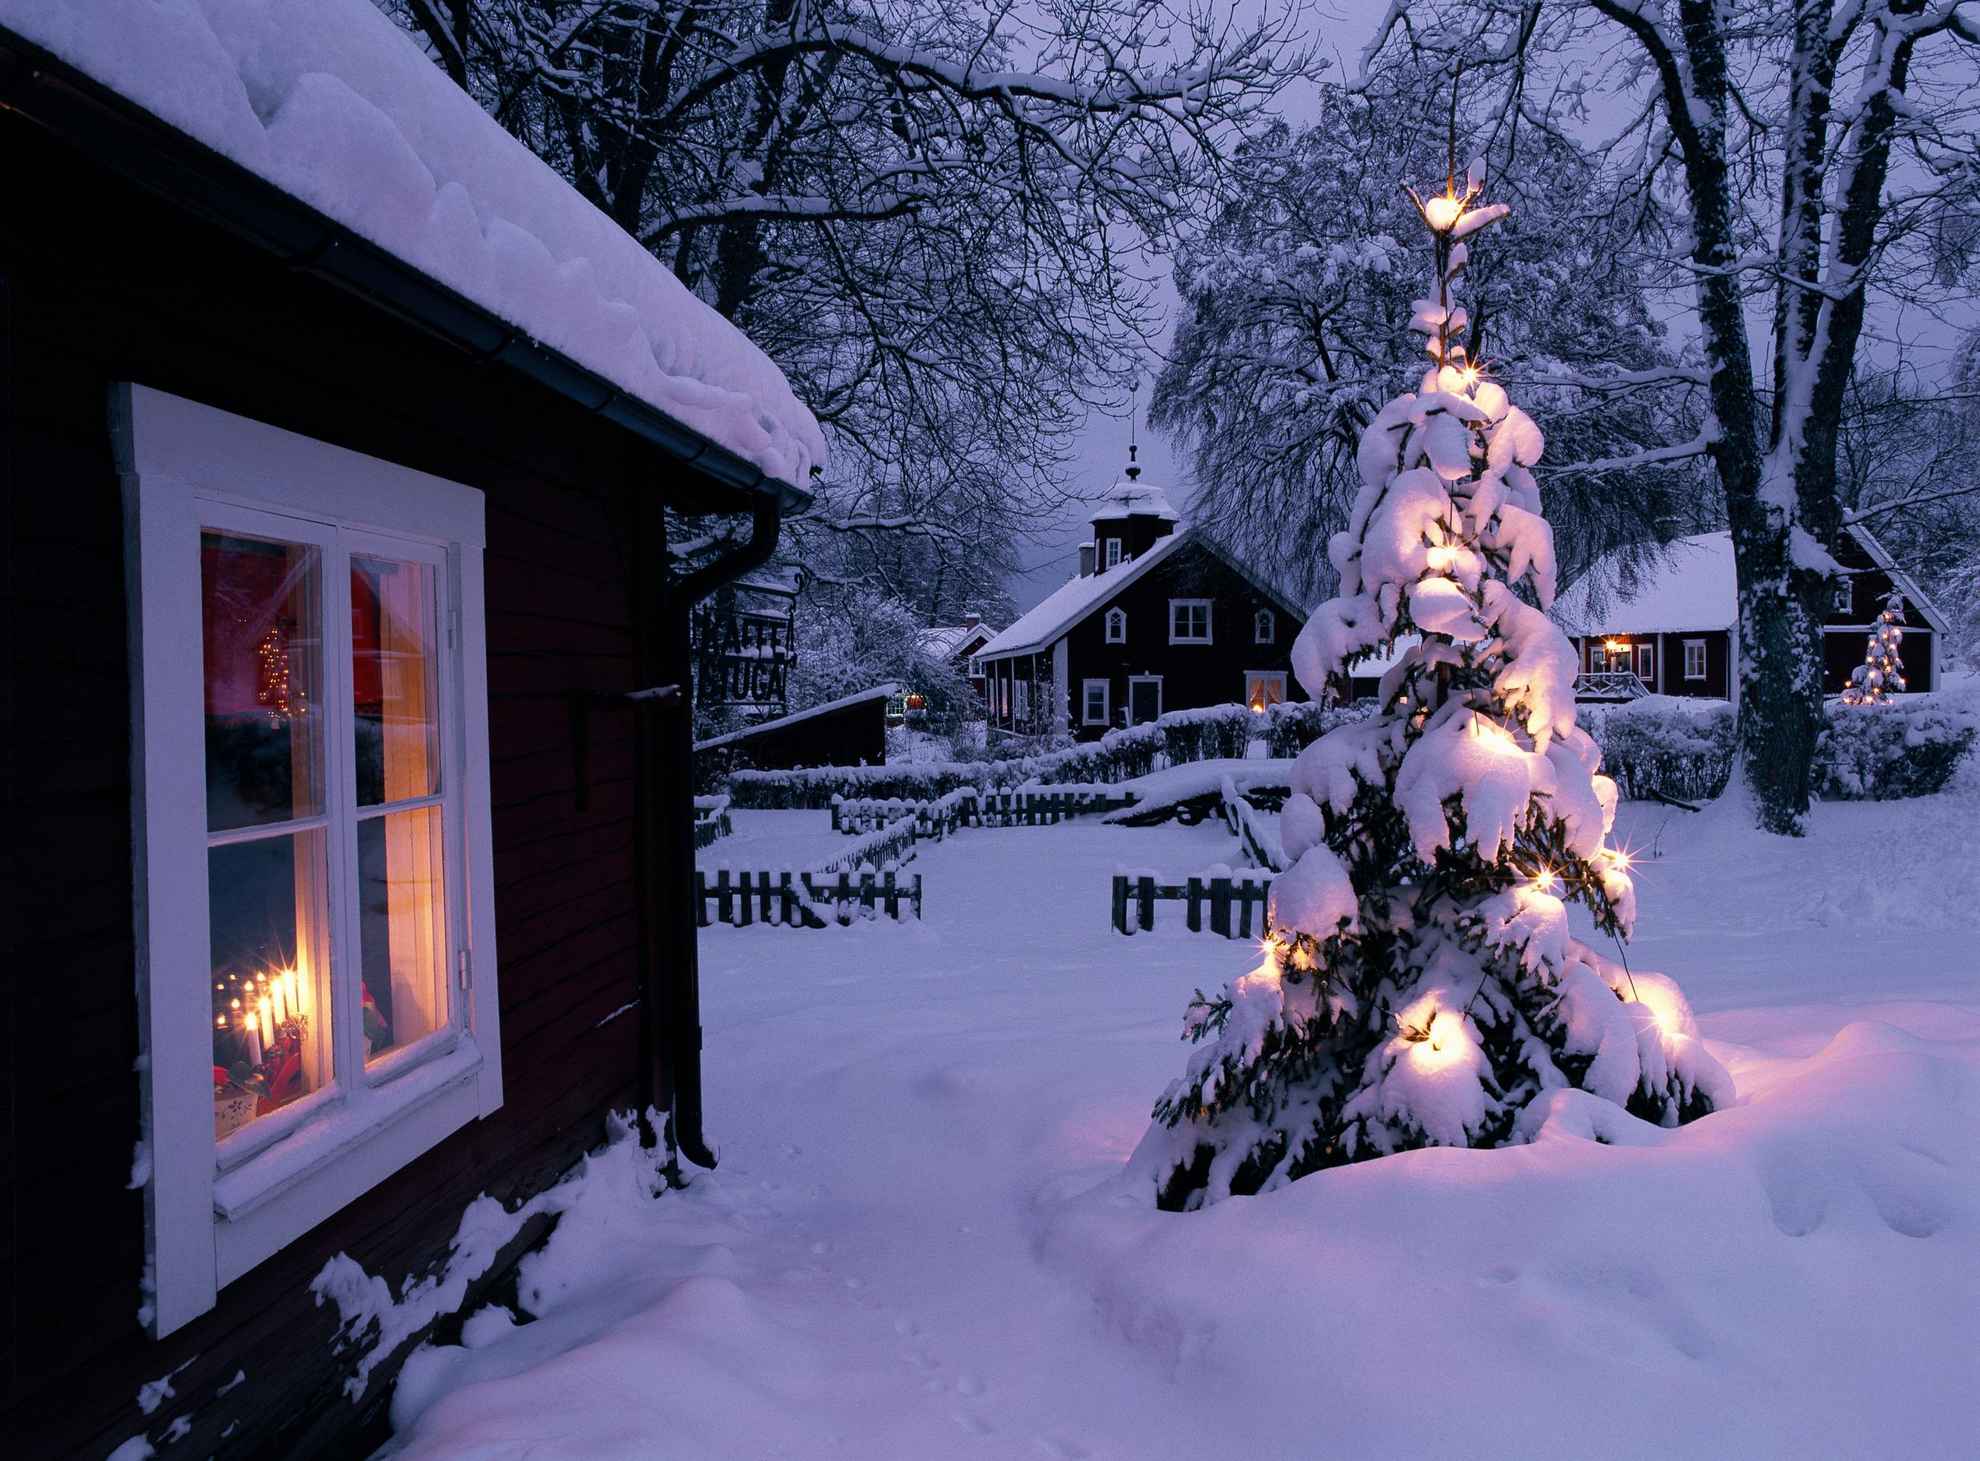 Sneeuw bedekt overvloedig rode en witte huizen en een buiten versierde boom.